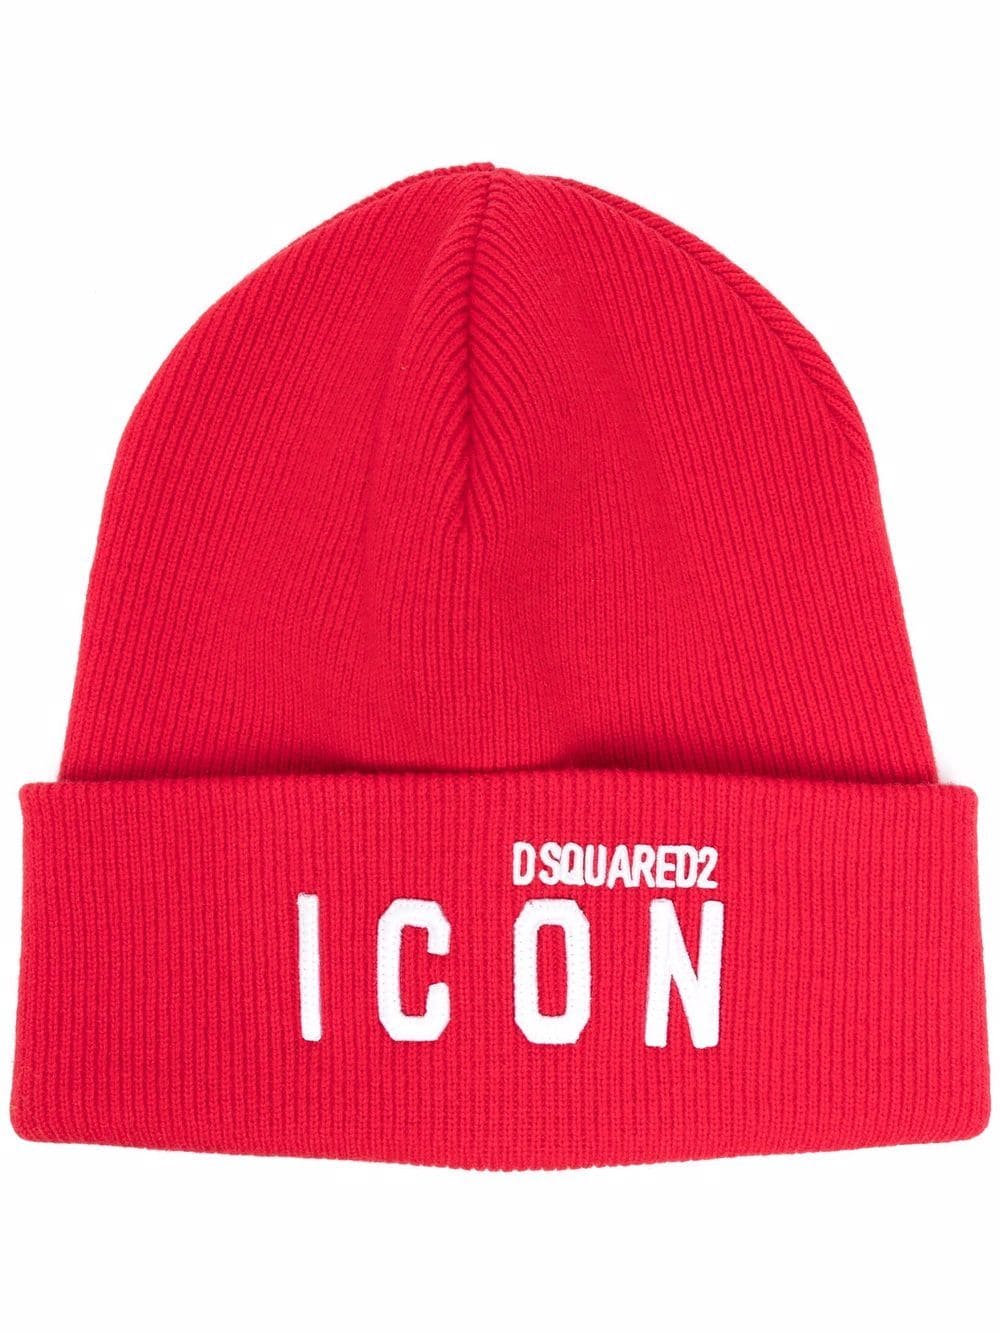 фото Dsquared2 шапка бини с вышитым логотипом icon